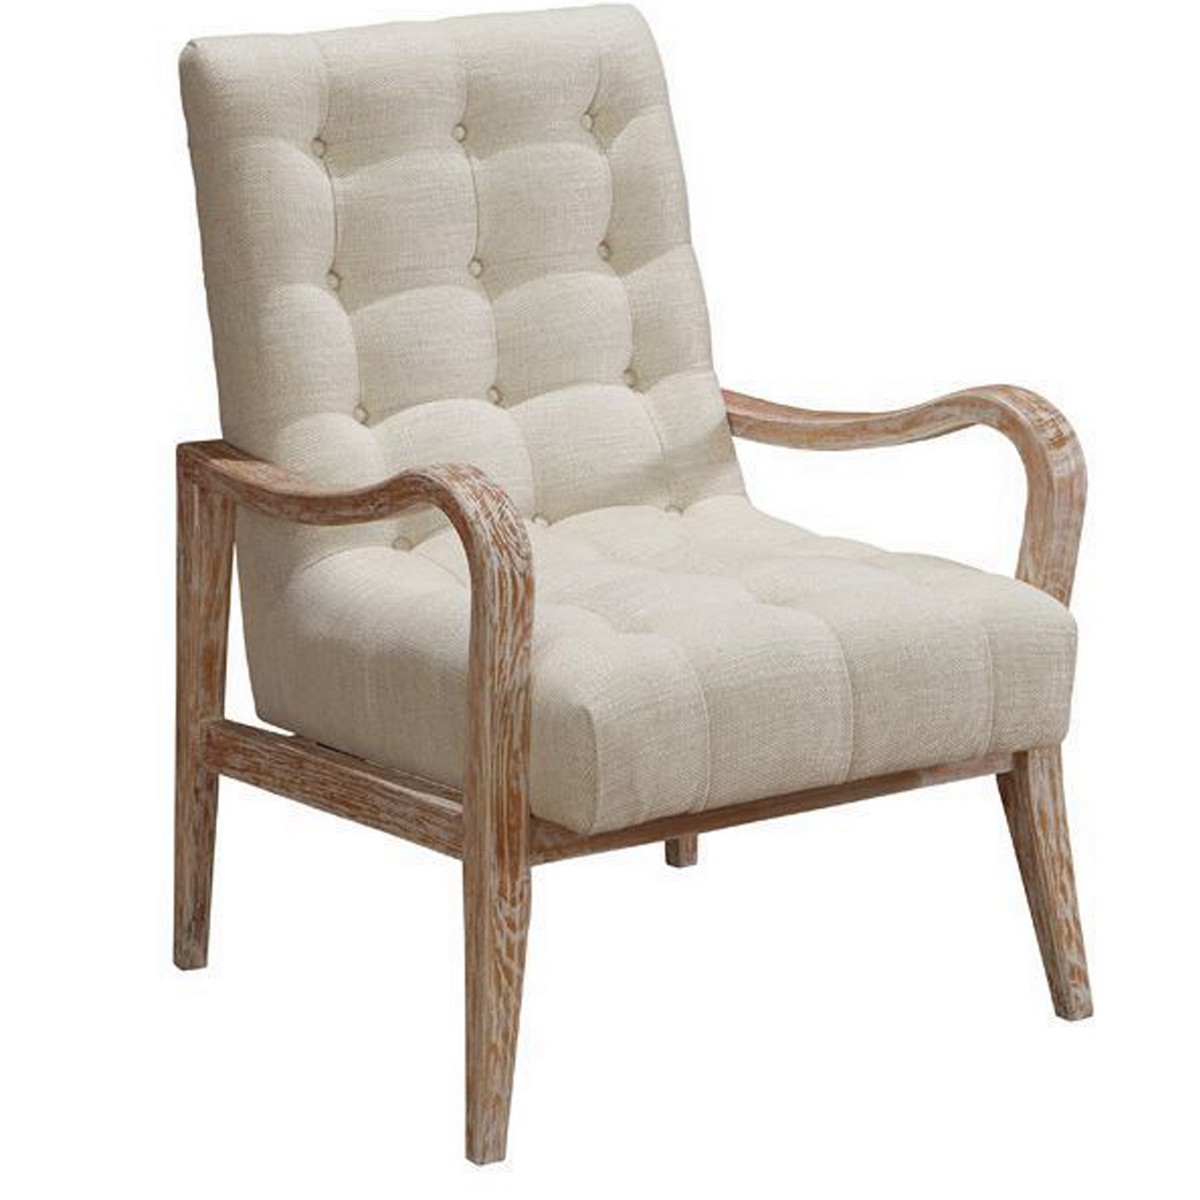 Armen Living Regis Accent Chair In Cream